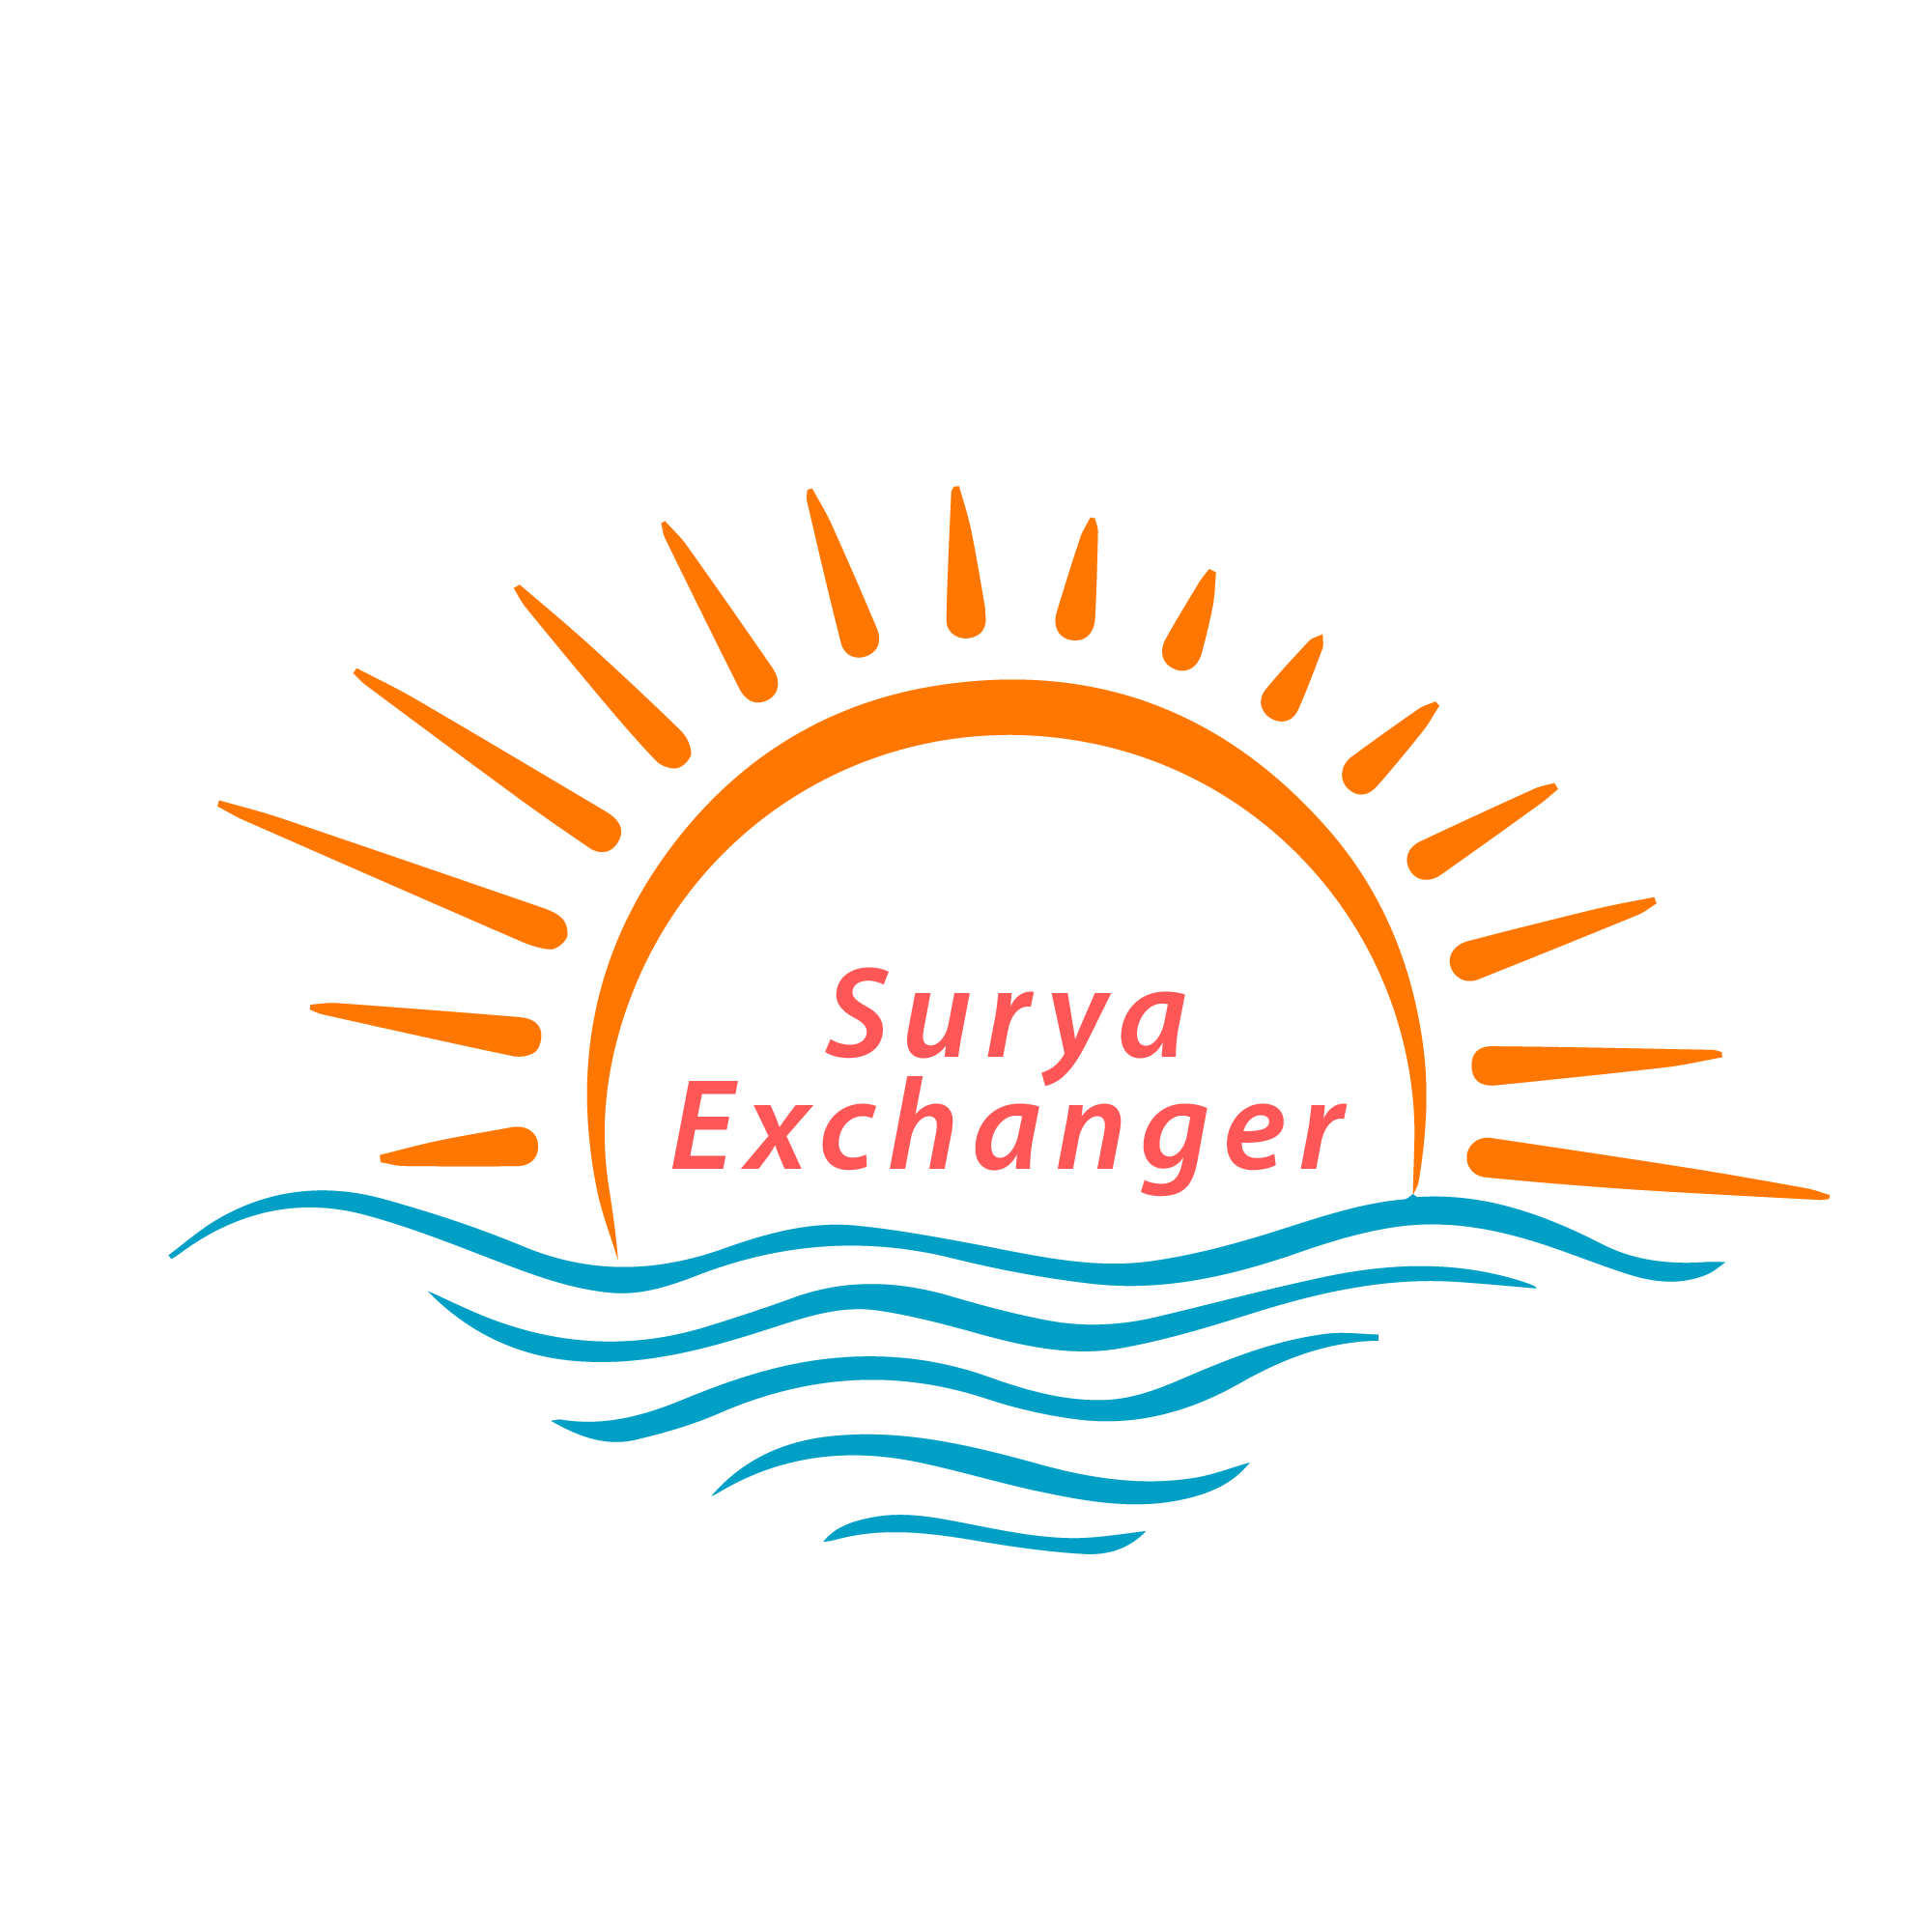 SuryaExchanger